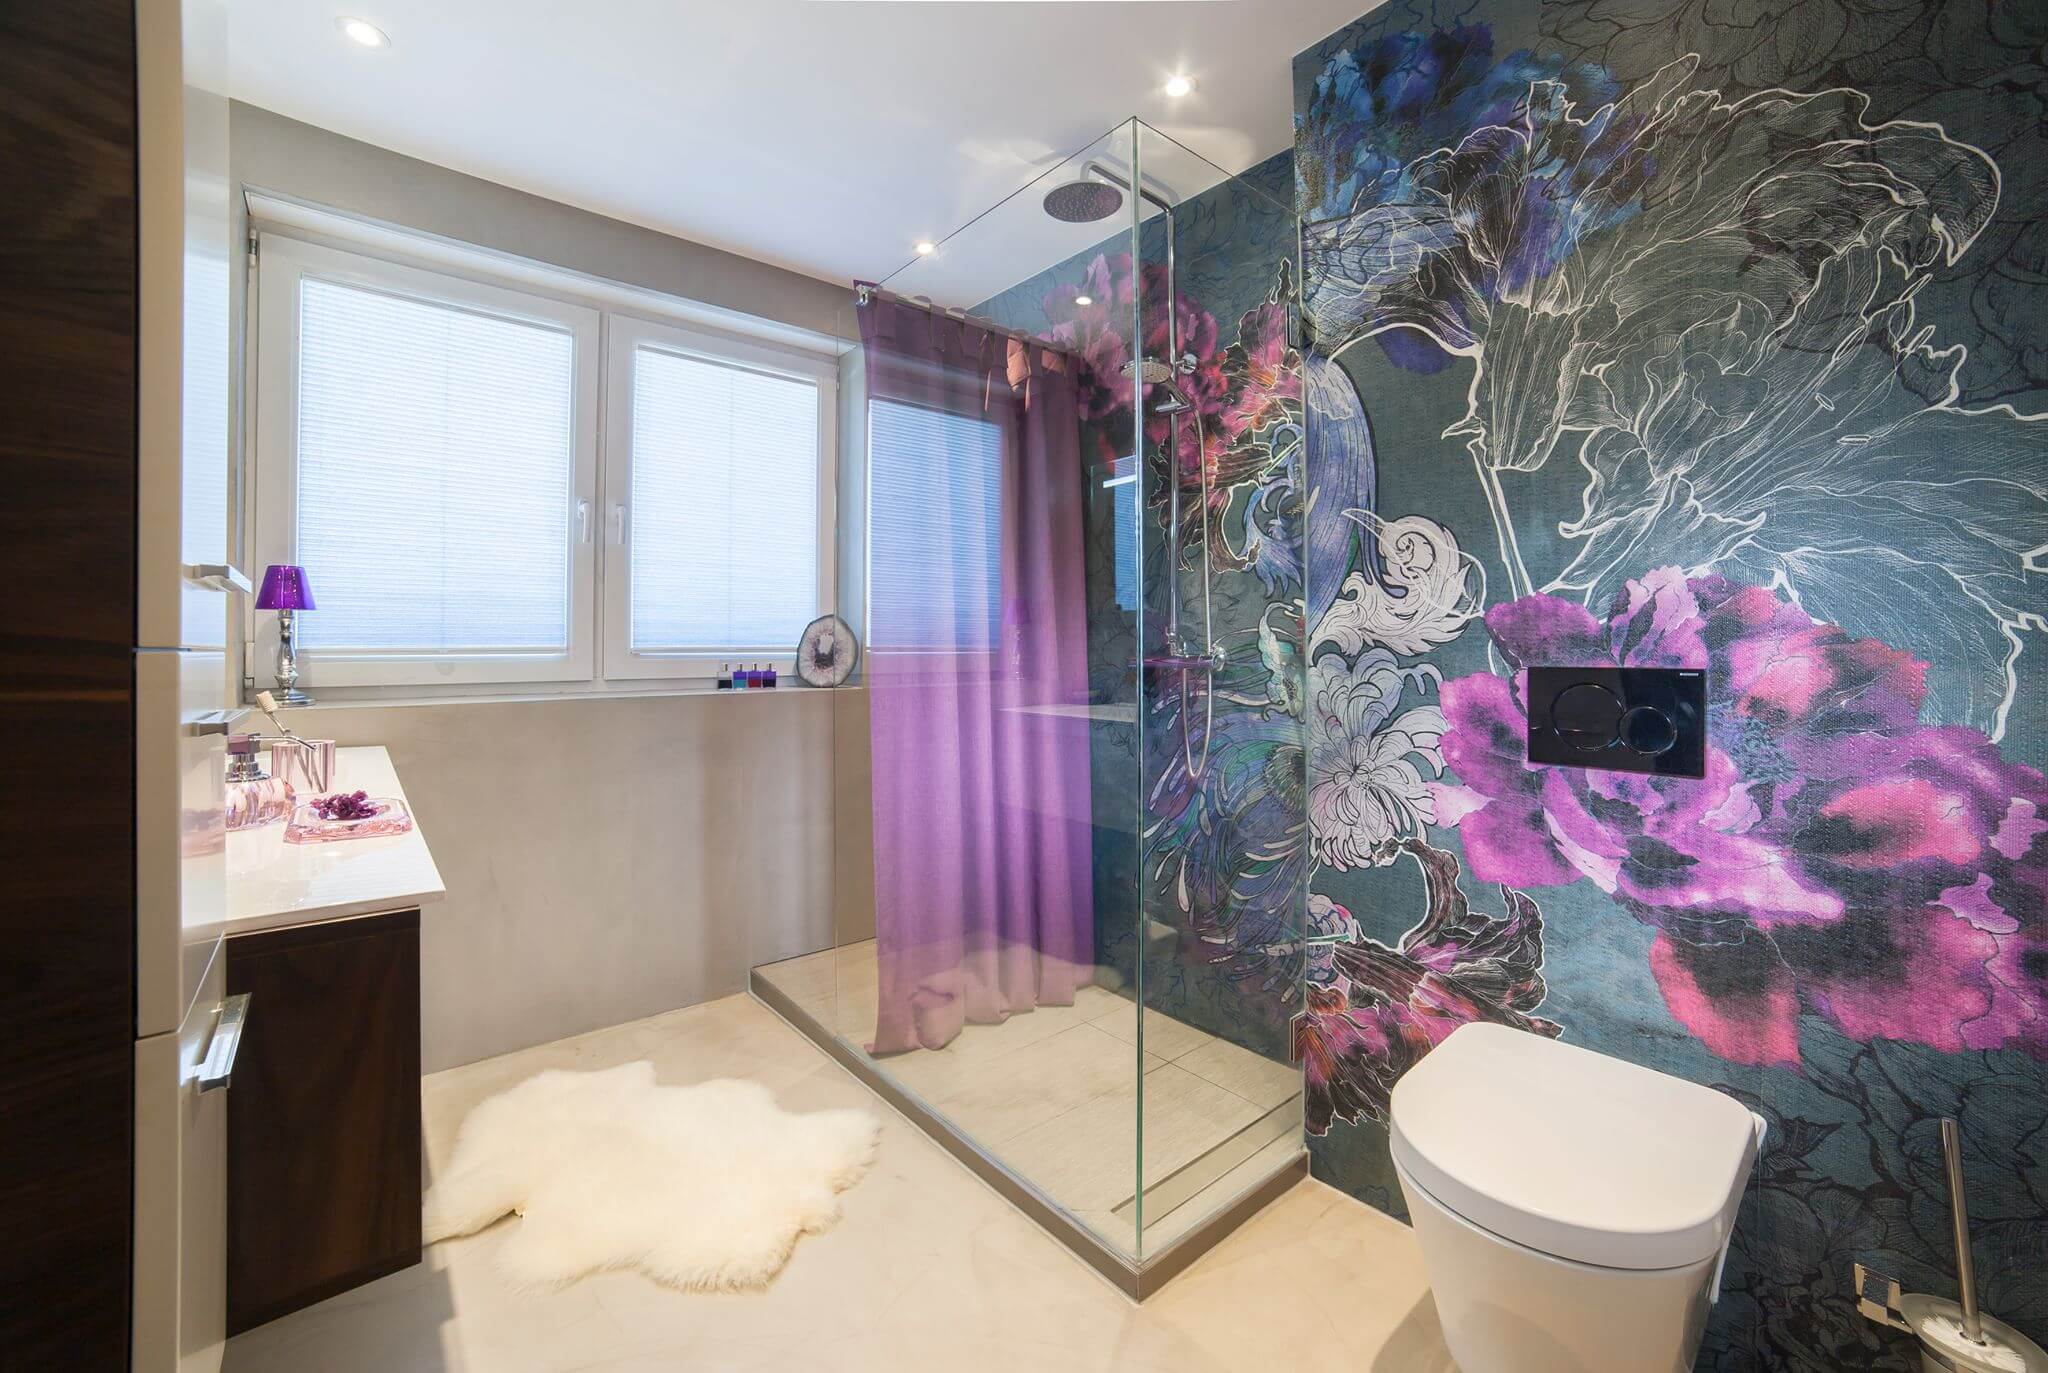 Helles Badezimmer mit bodenebener Dusche, Toilette und wandfüllender Wall and Deco Tapete